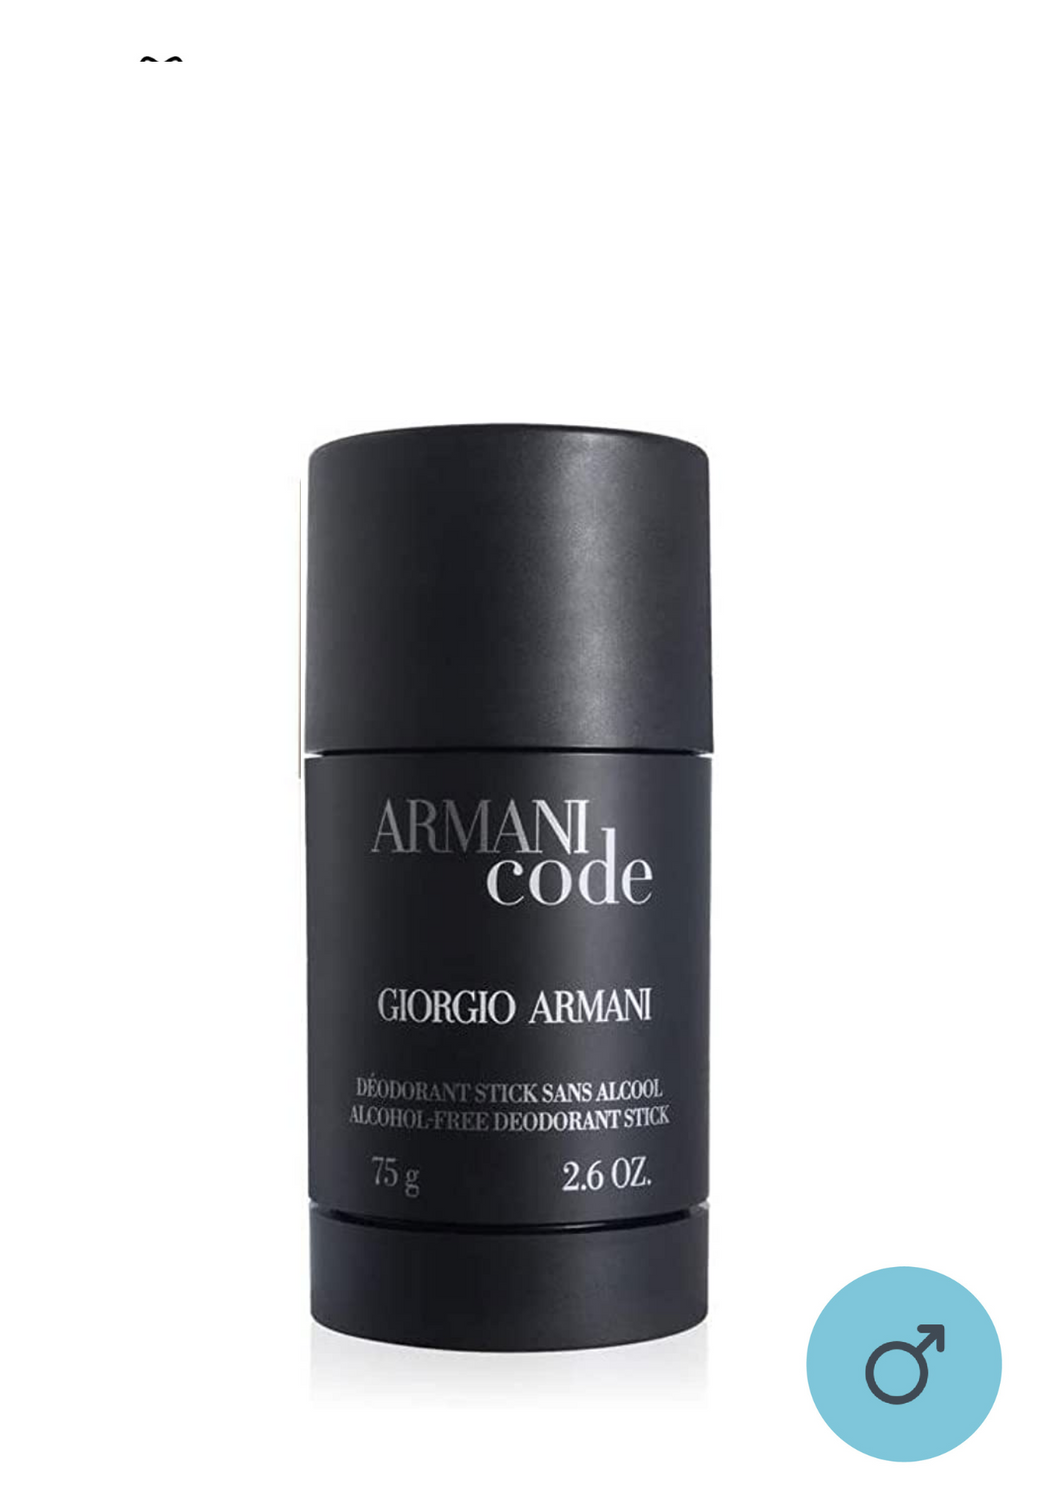 Giorgio Armani Code Men Deodorant Stick 75g